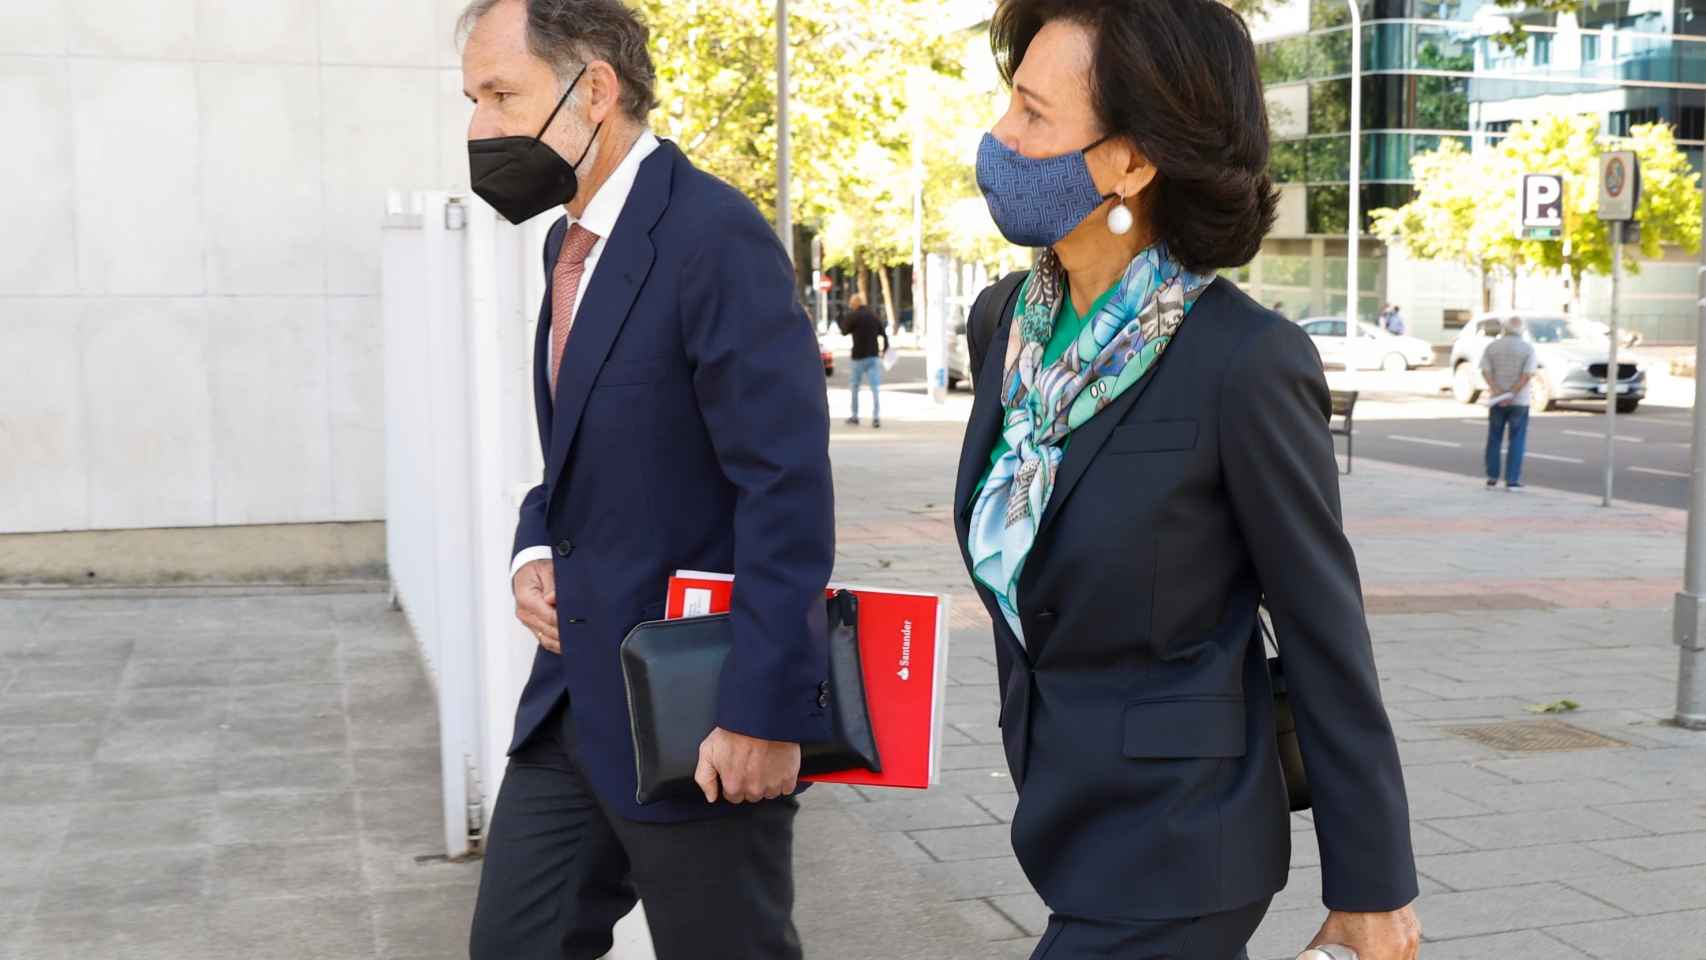 Ana Botín, presidenta de Santander, llega al juicio por el fichaje fallido de Andrea Orcel en mayo de 2021 junto a Jaime Pérez Renovales, secretario del consejo de administración del banco.